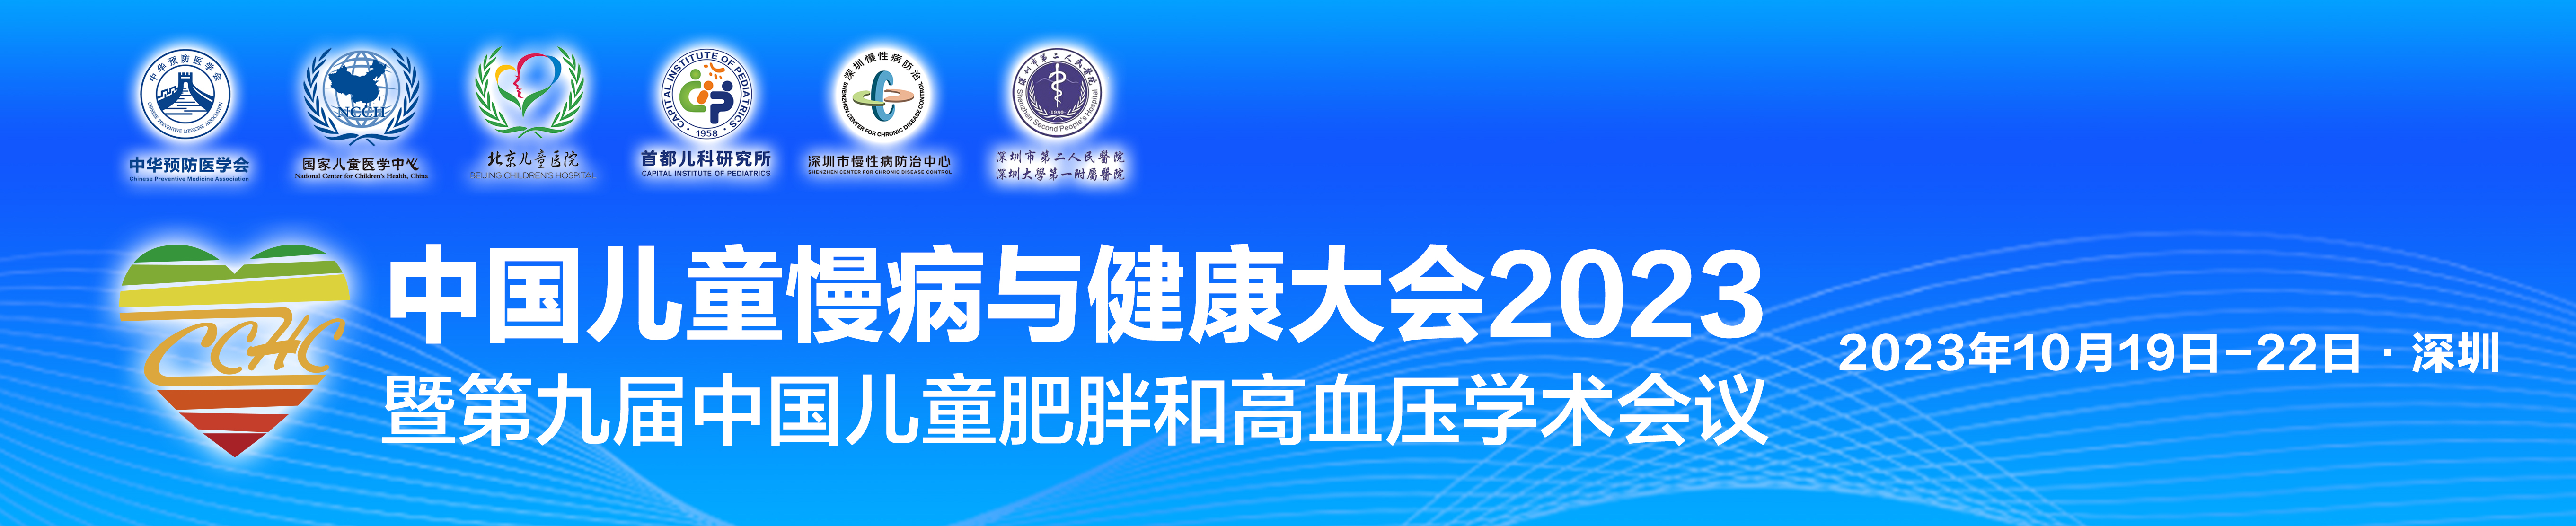 中国儿童慢病与健康大会2023暨第九届中国儿童肥胖和高血压学术会议